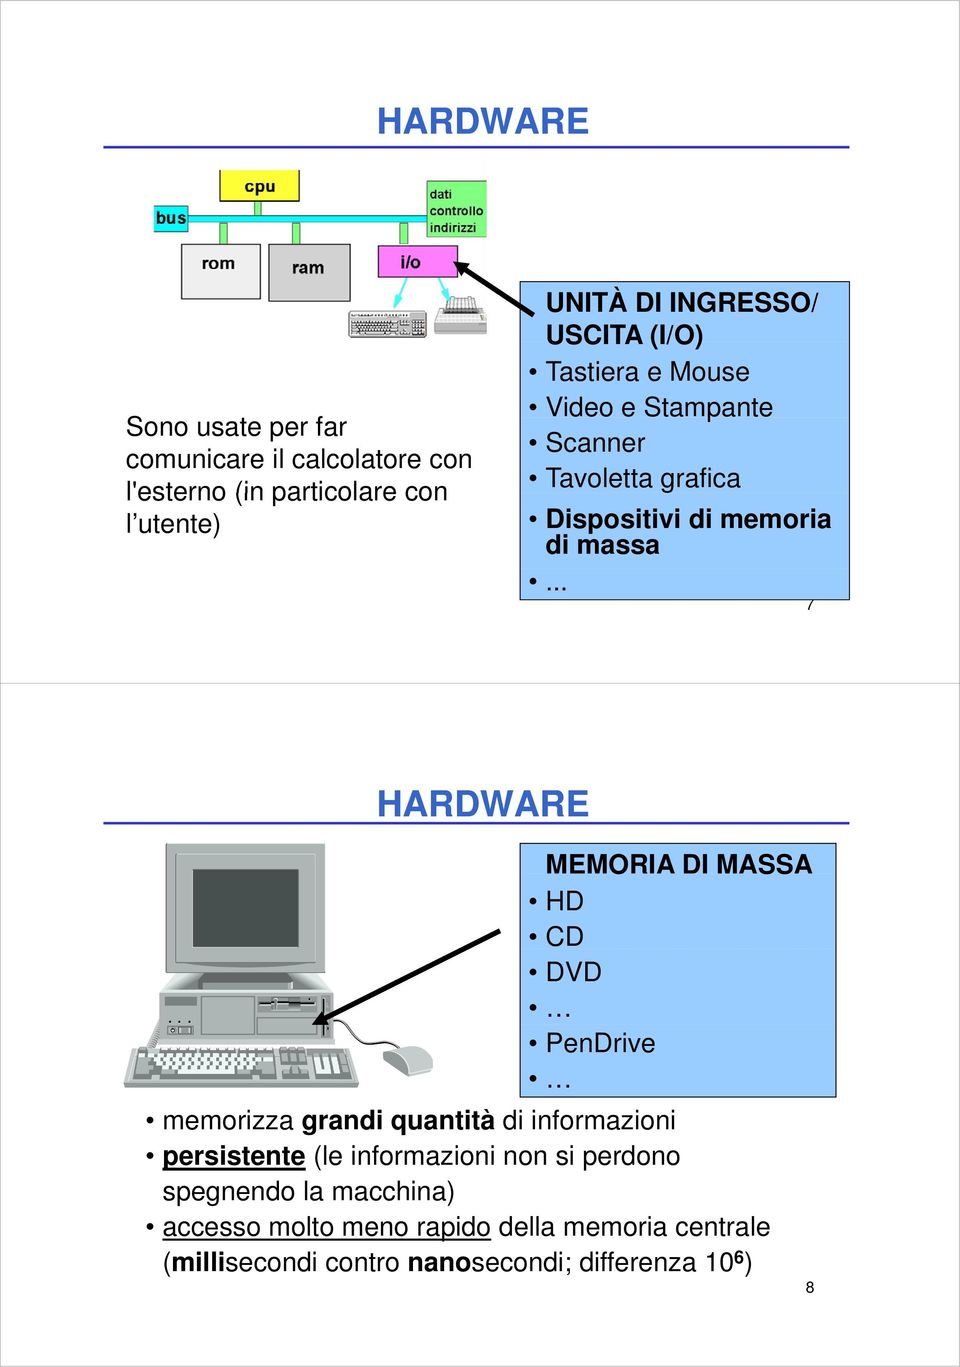 .. 7 HARDWARE MEMORIA DI MASSA HD CD DVD PenDrive memorizza grandi quantità di informazioni persistente (le informazioni